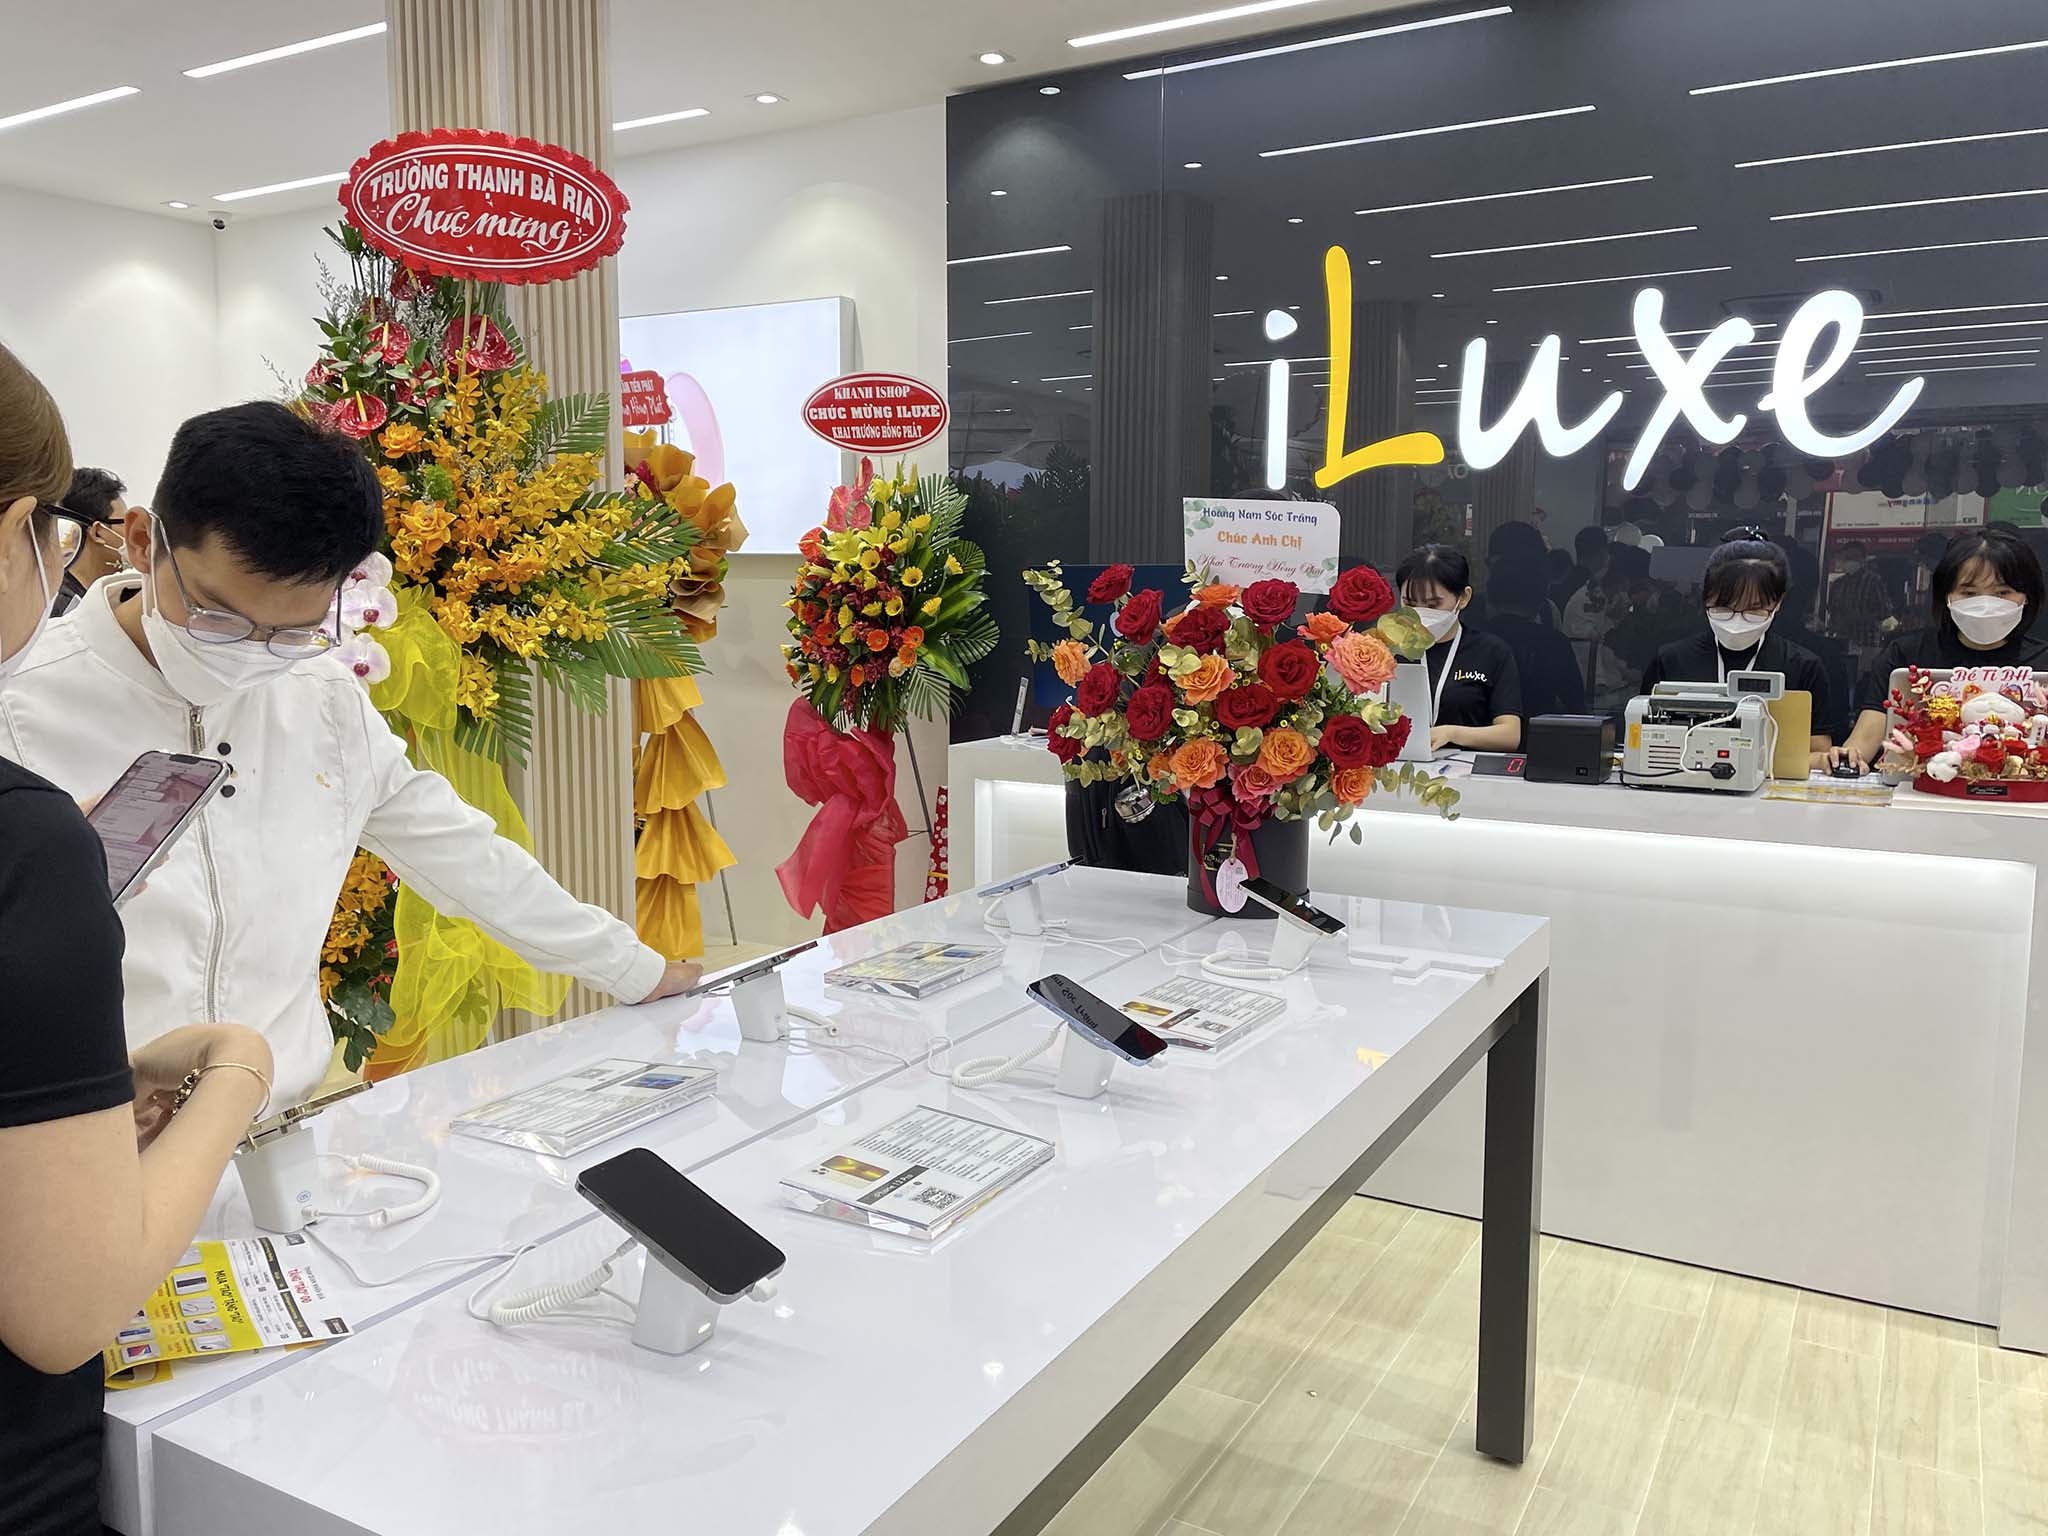 iLuxe chính thức khai trương: Thêm điểm đến đáng tin cậy dành cho fan táo